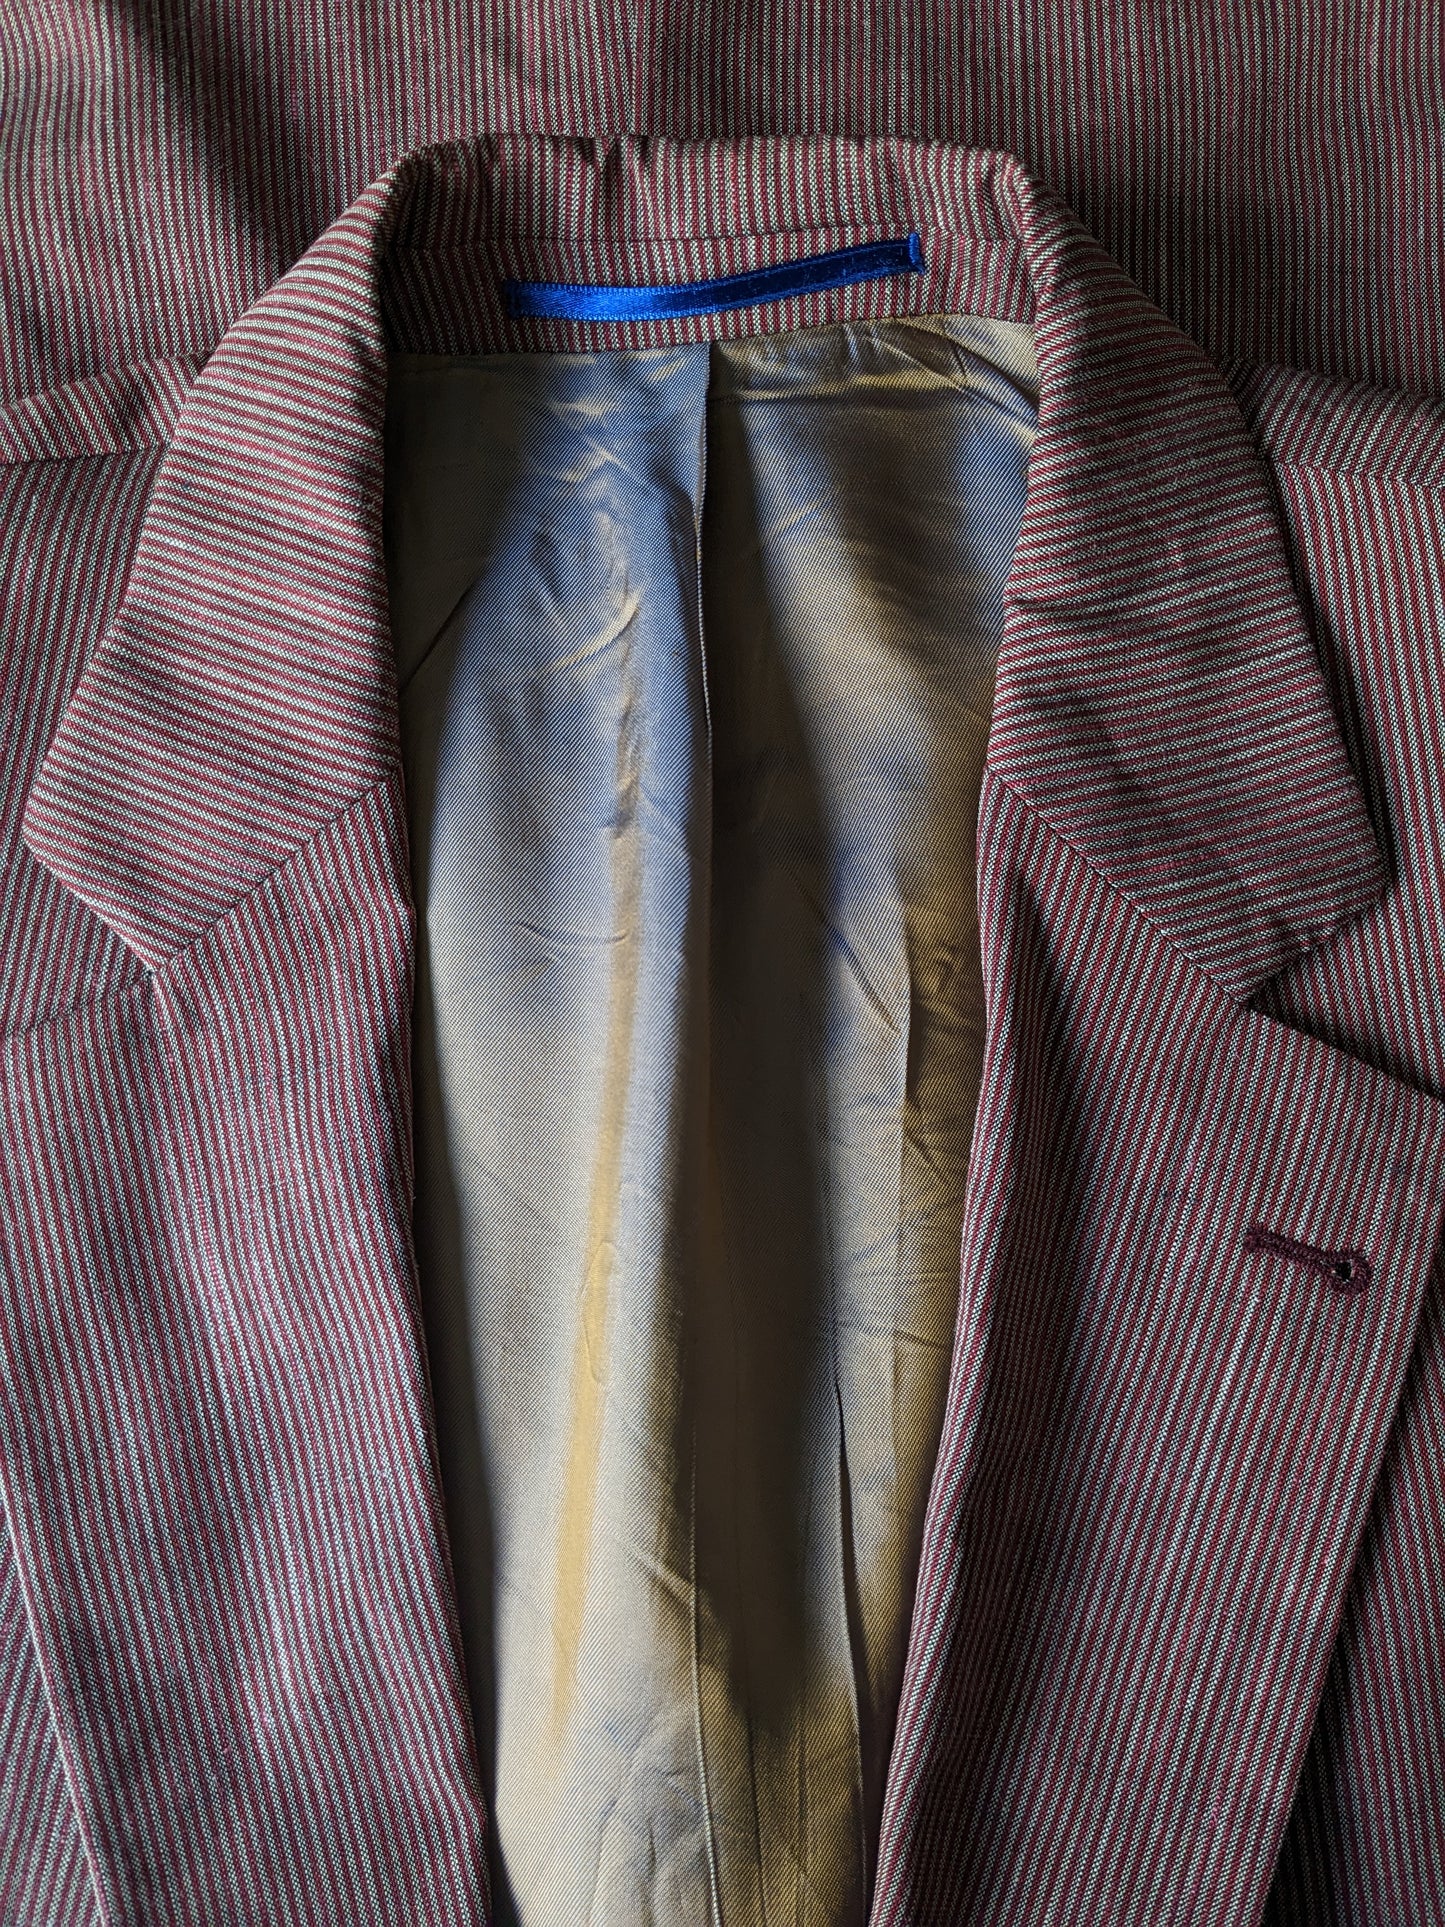 Giacca di seta in lino di lana bogart. Strisce rossa grigia. Dimensione 52 / L.